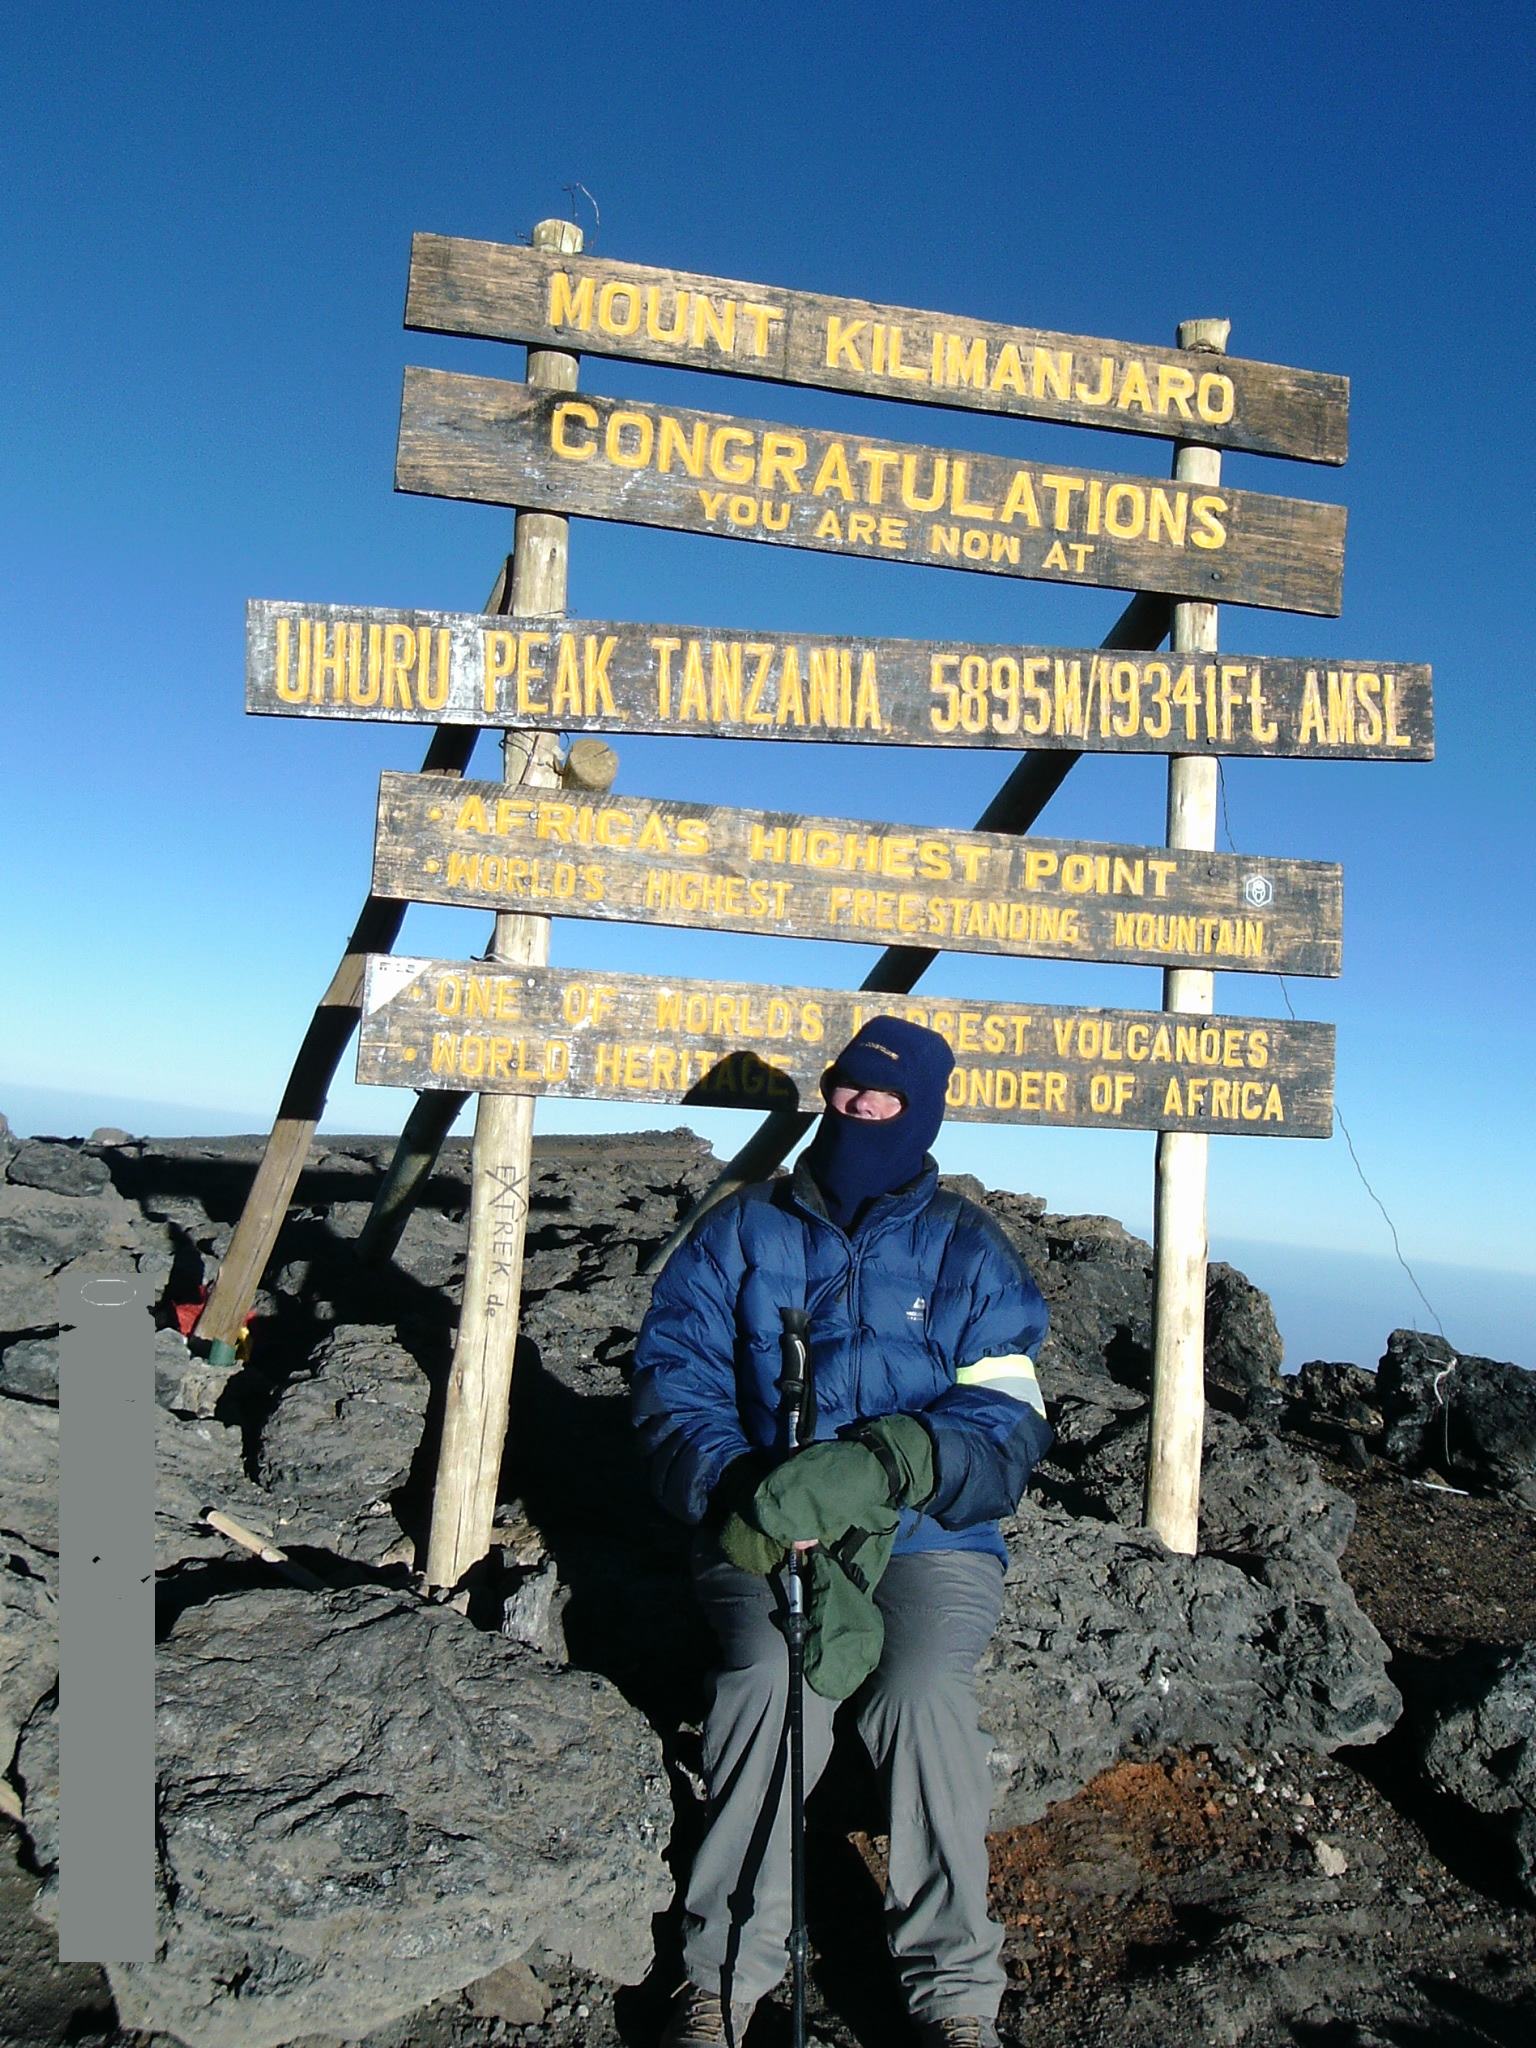 Hilary Cox Kilimanjaro